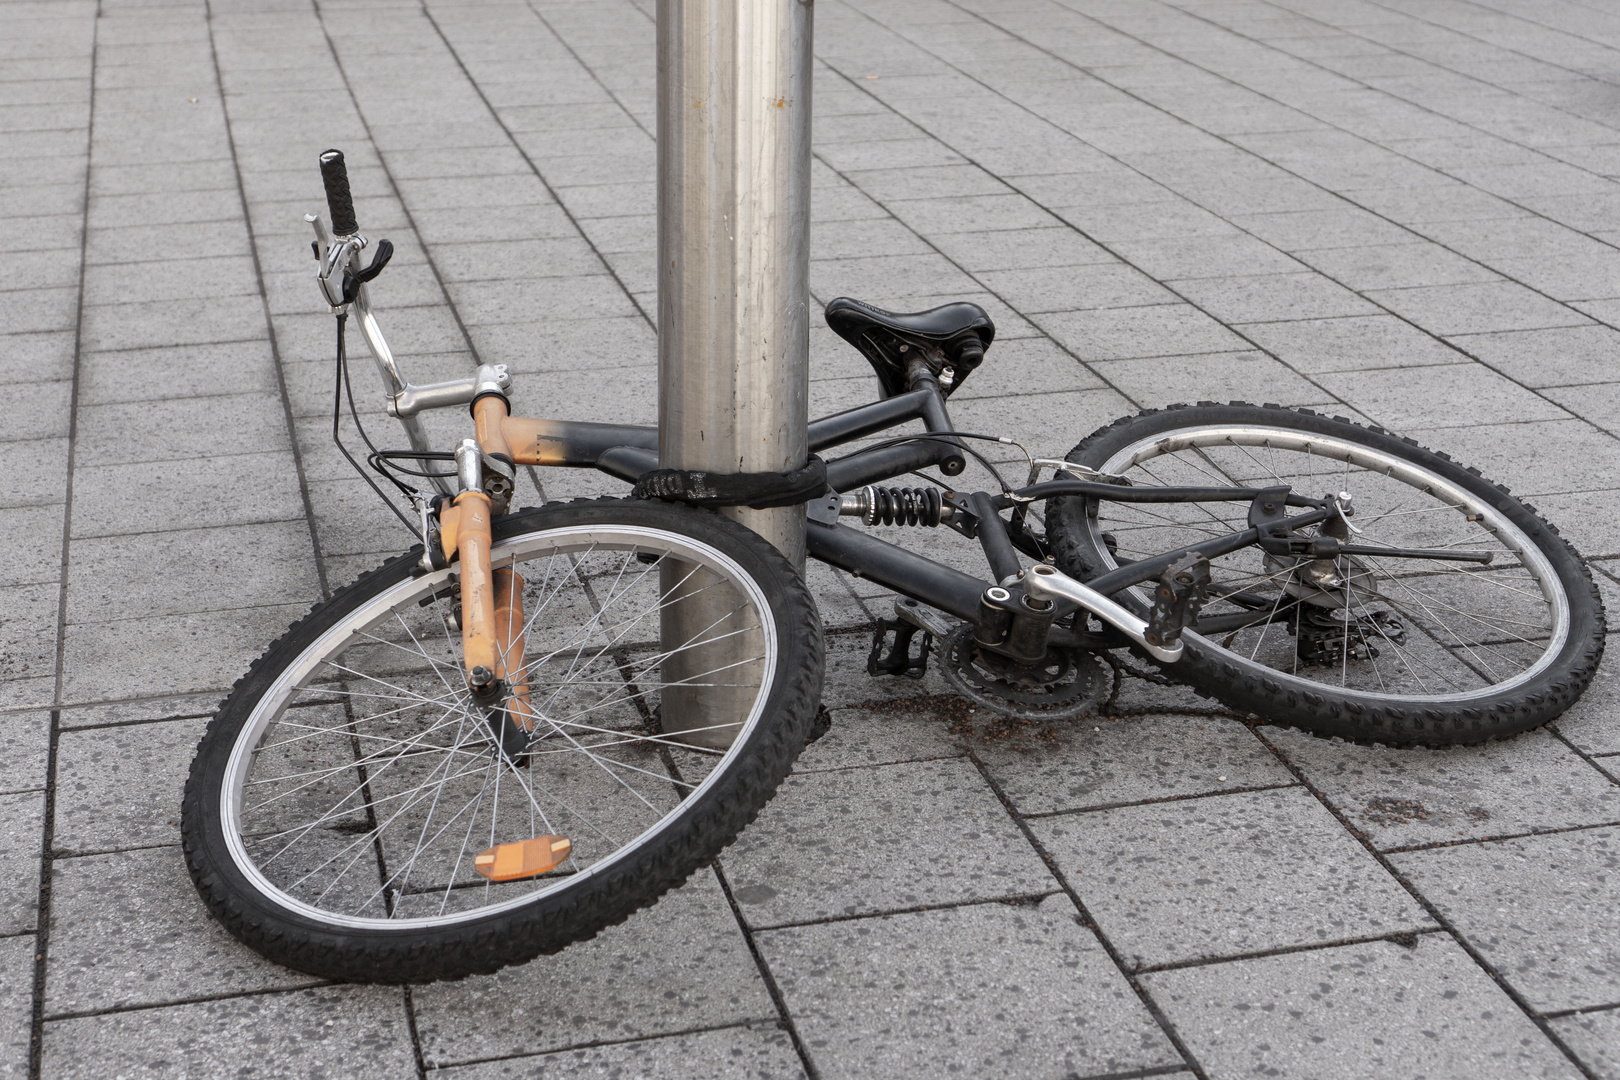 Ein kaputtes Fahrrad an der Säule befestigt